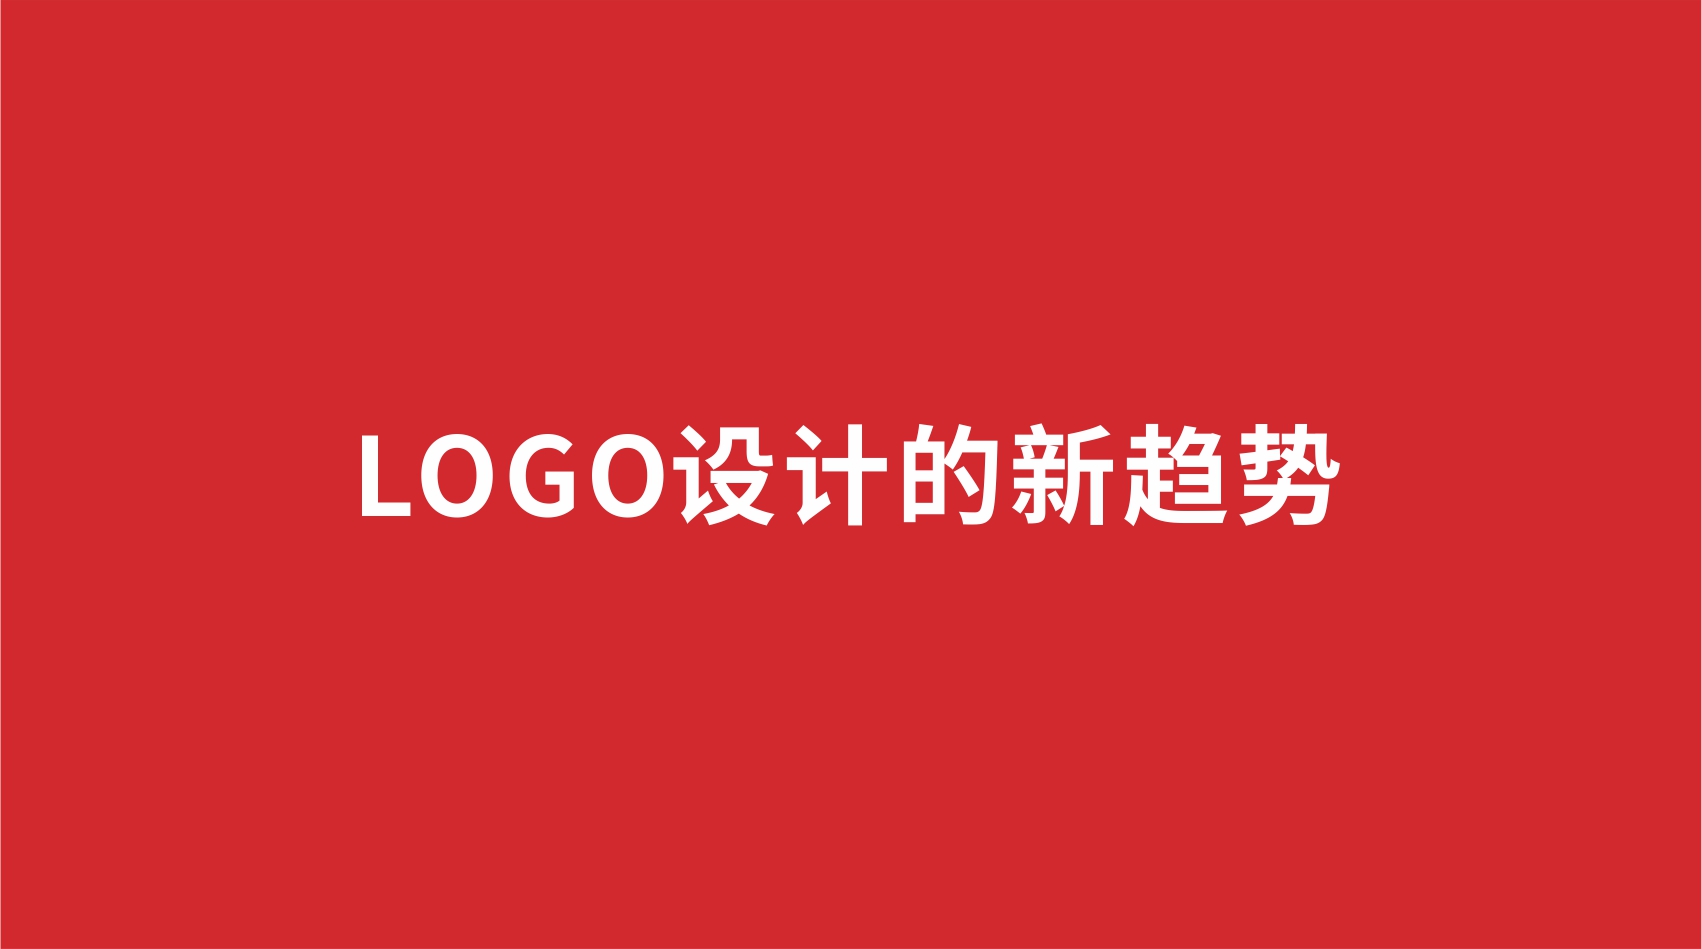 13品牌设计 | LOGO设计的新趋势